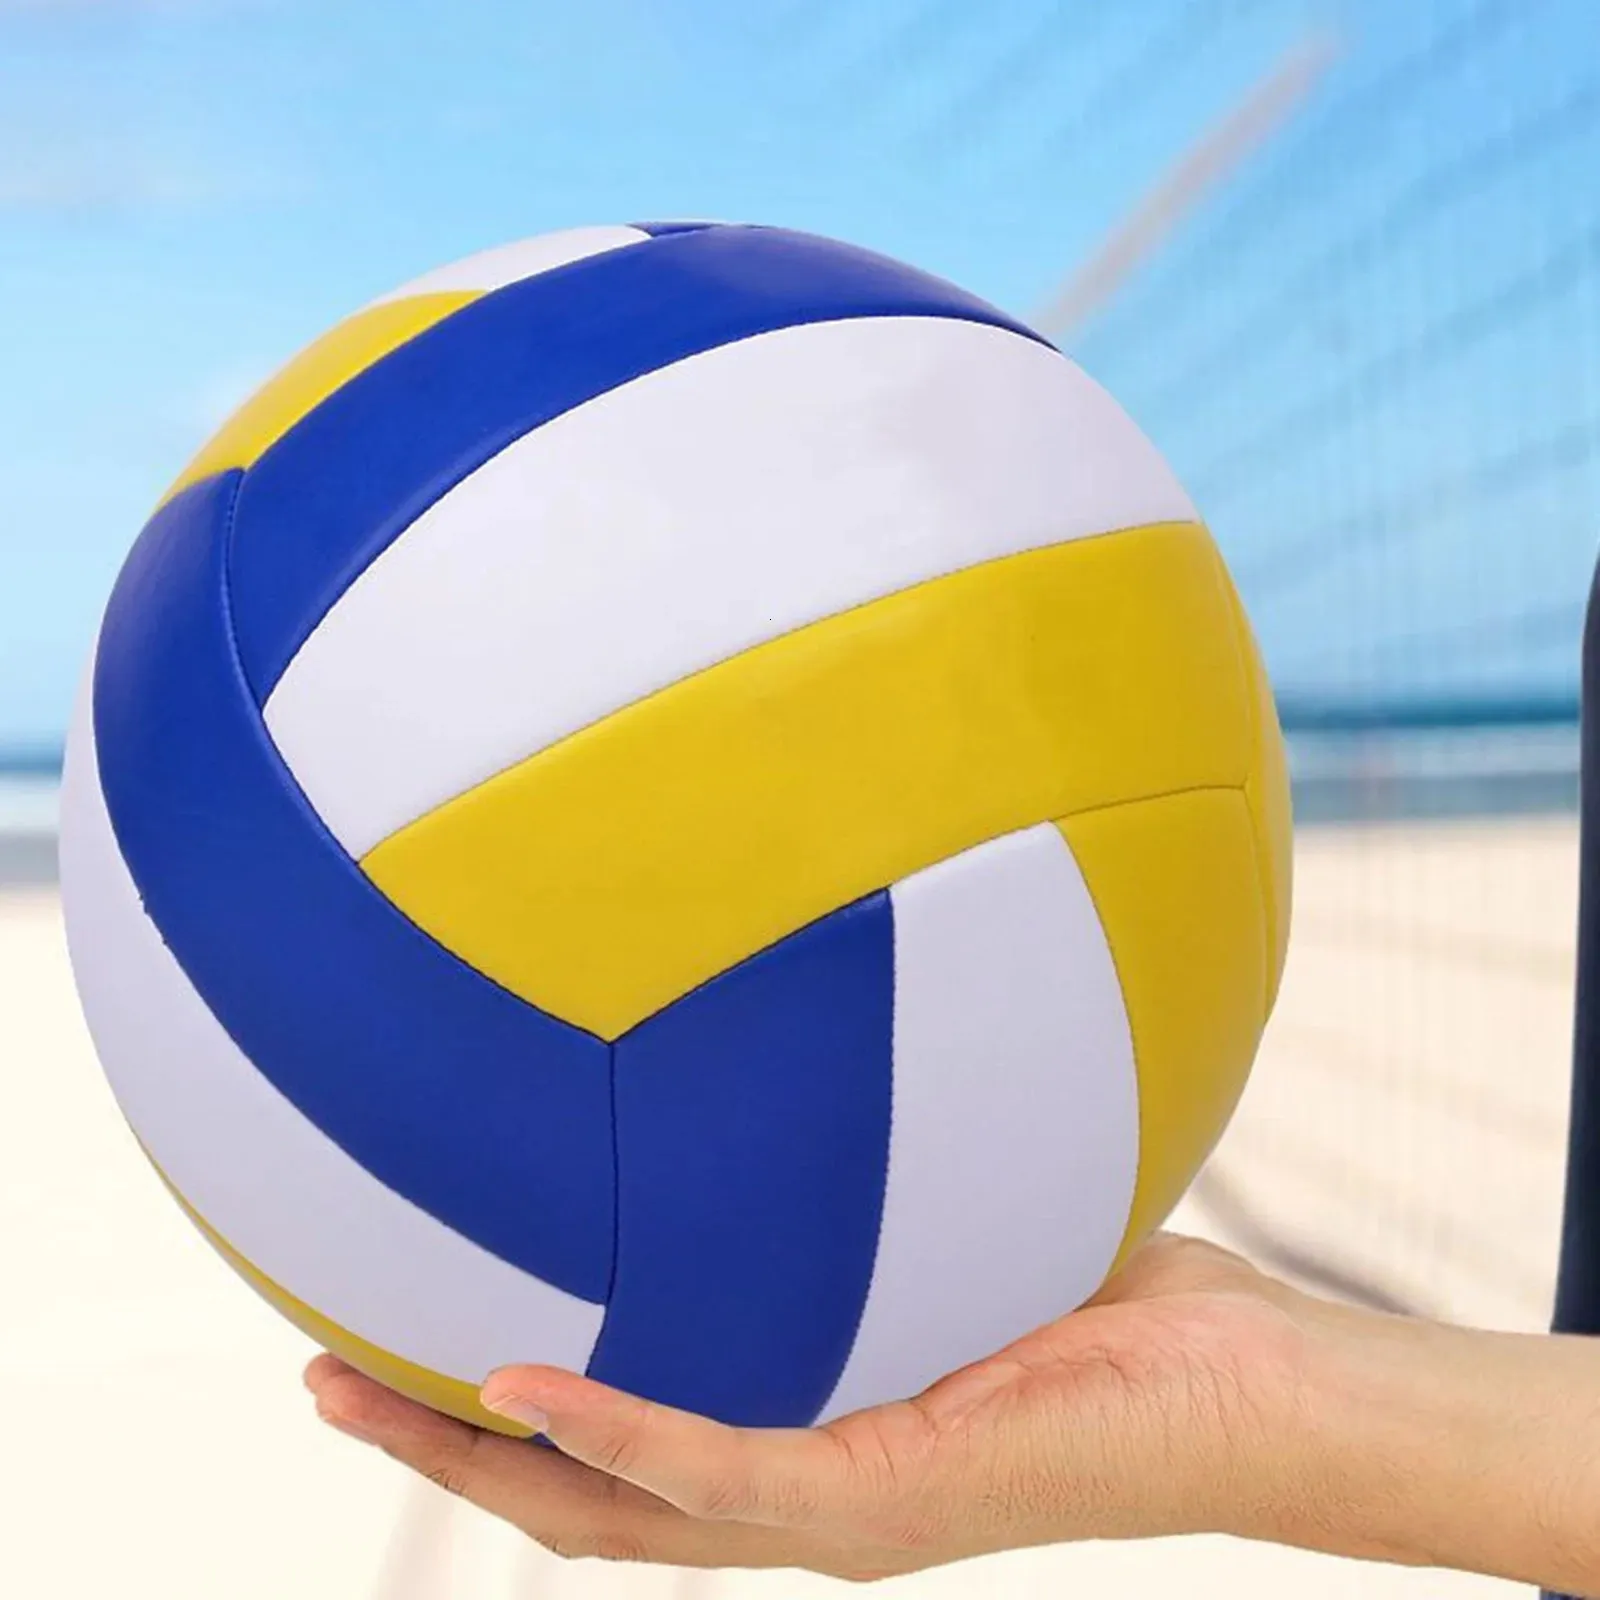 Palloni da allenamento da spiaggia per interni ed esterni, stile pallavolo, da competizione, misura 5 P 240103